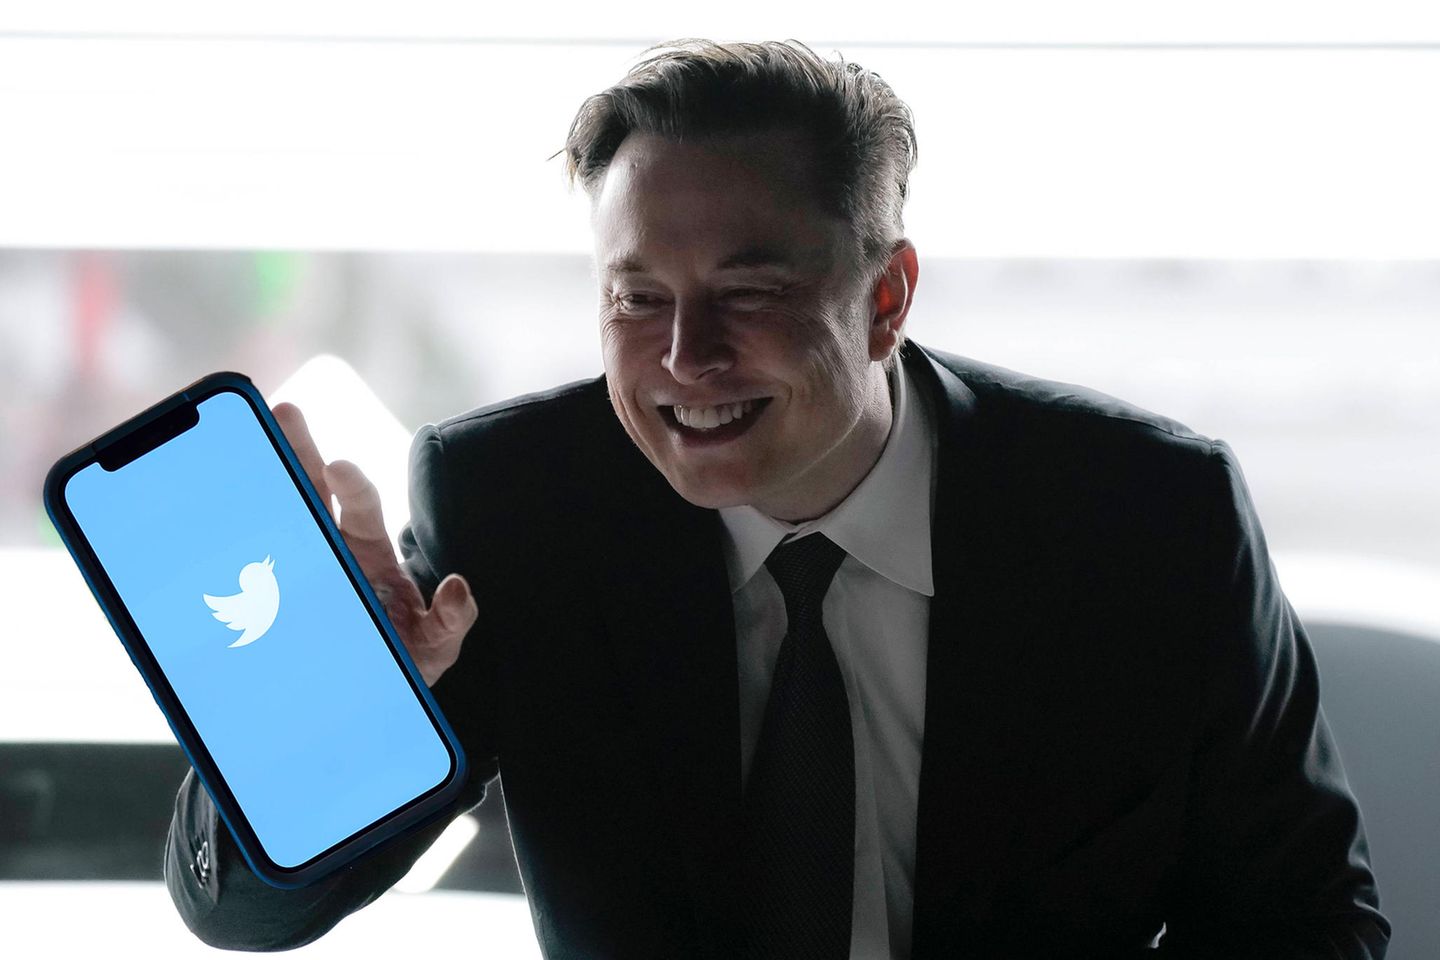 Fotomontage: Elon Musk greift nach einem Smartphone auf dem das Twitter-Logo zu sehen ist